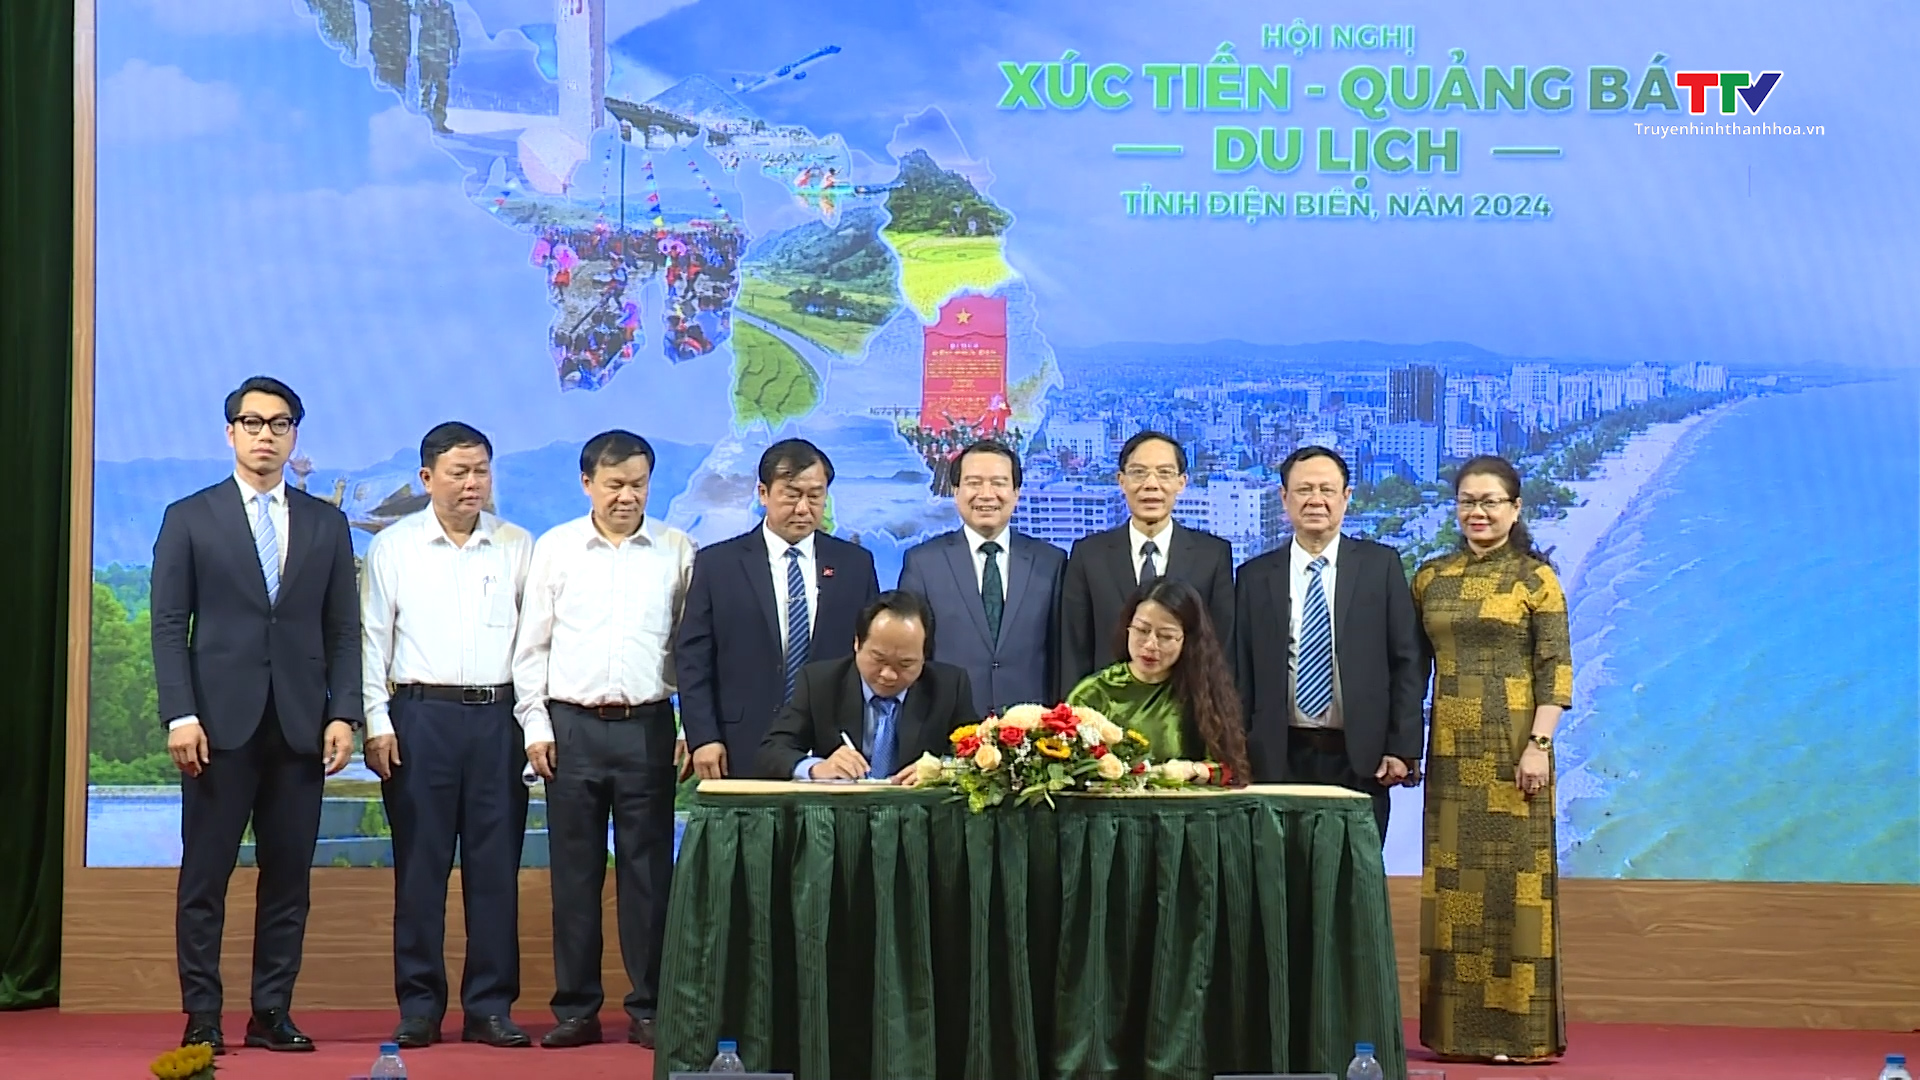 Hội nghị xúc tiến, quảng bá du lịch tỉnh Điện Biên tại Thanh Hoá năm 2024- Ảnh 3.